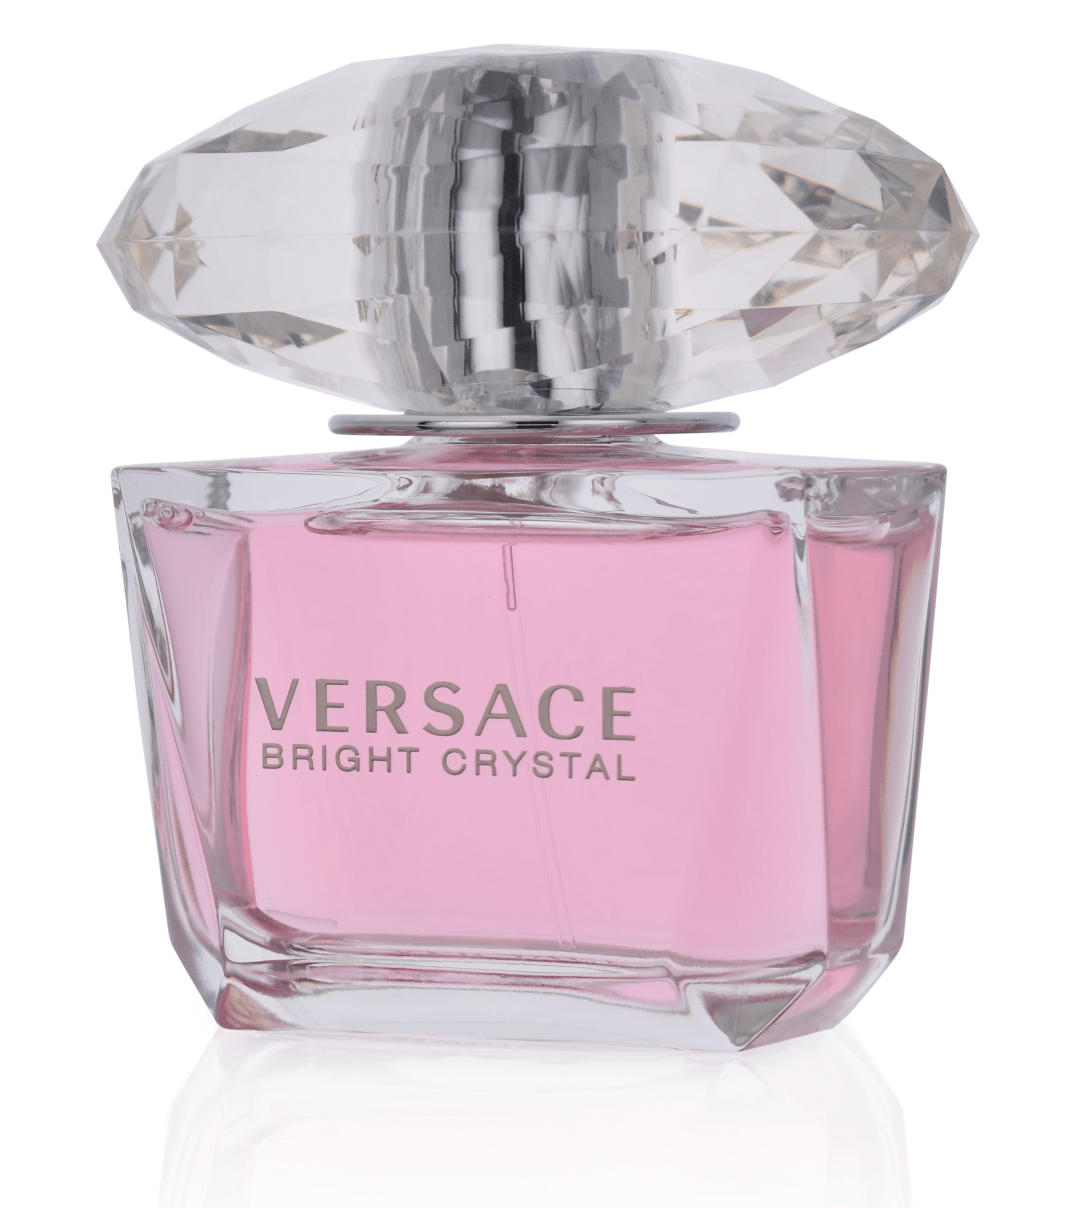 Versace Bright Crystal 50 ml Eau de Toilette